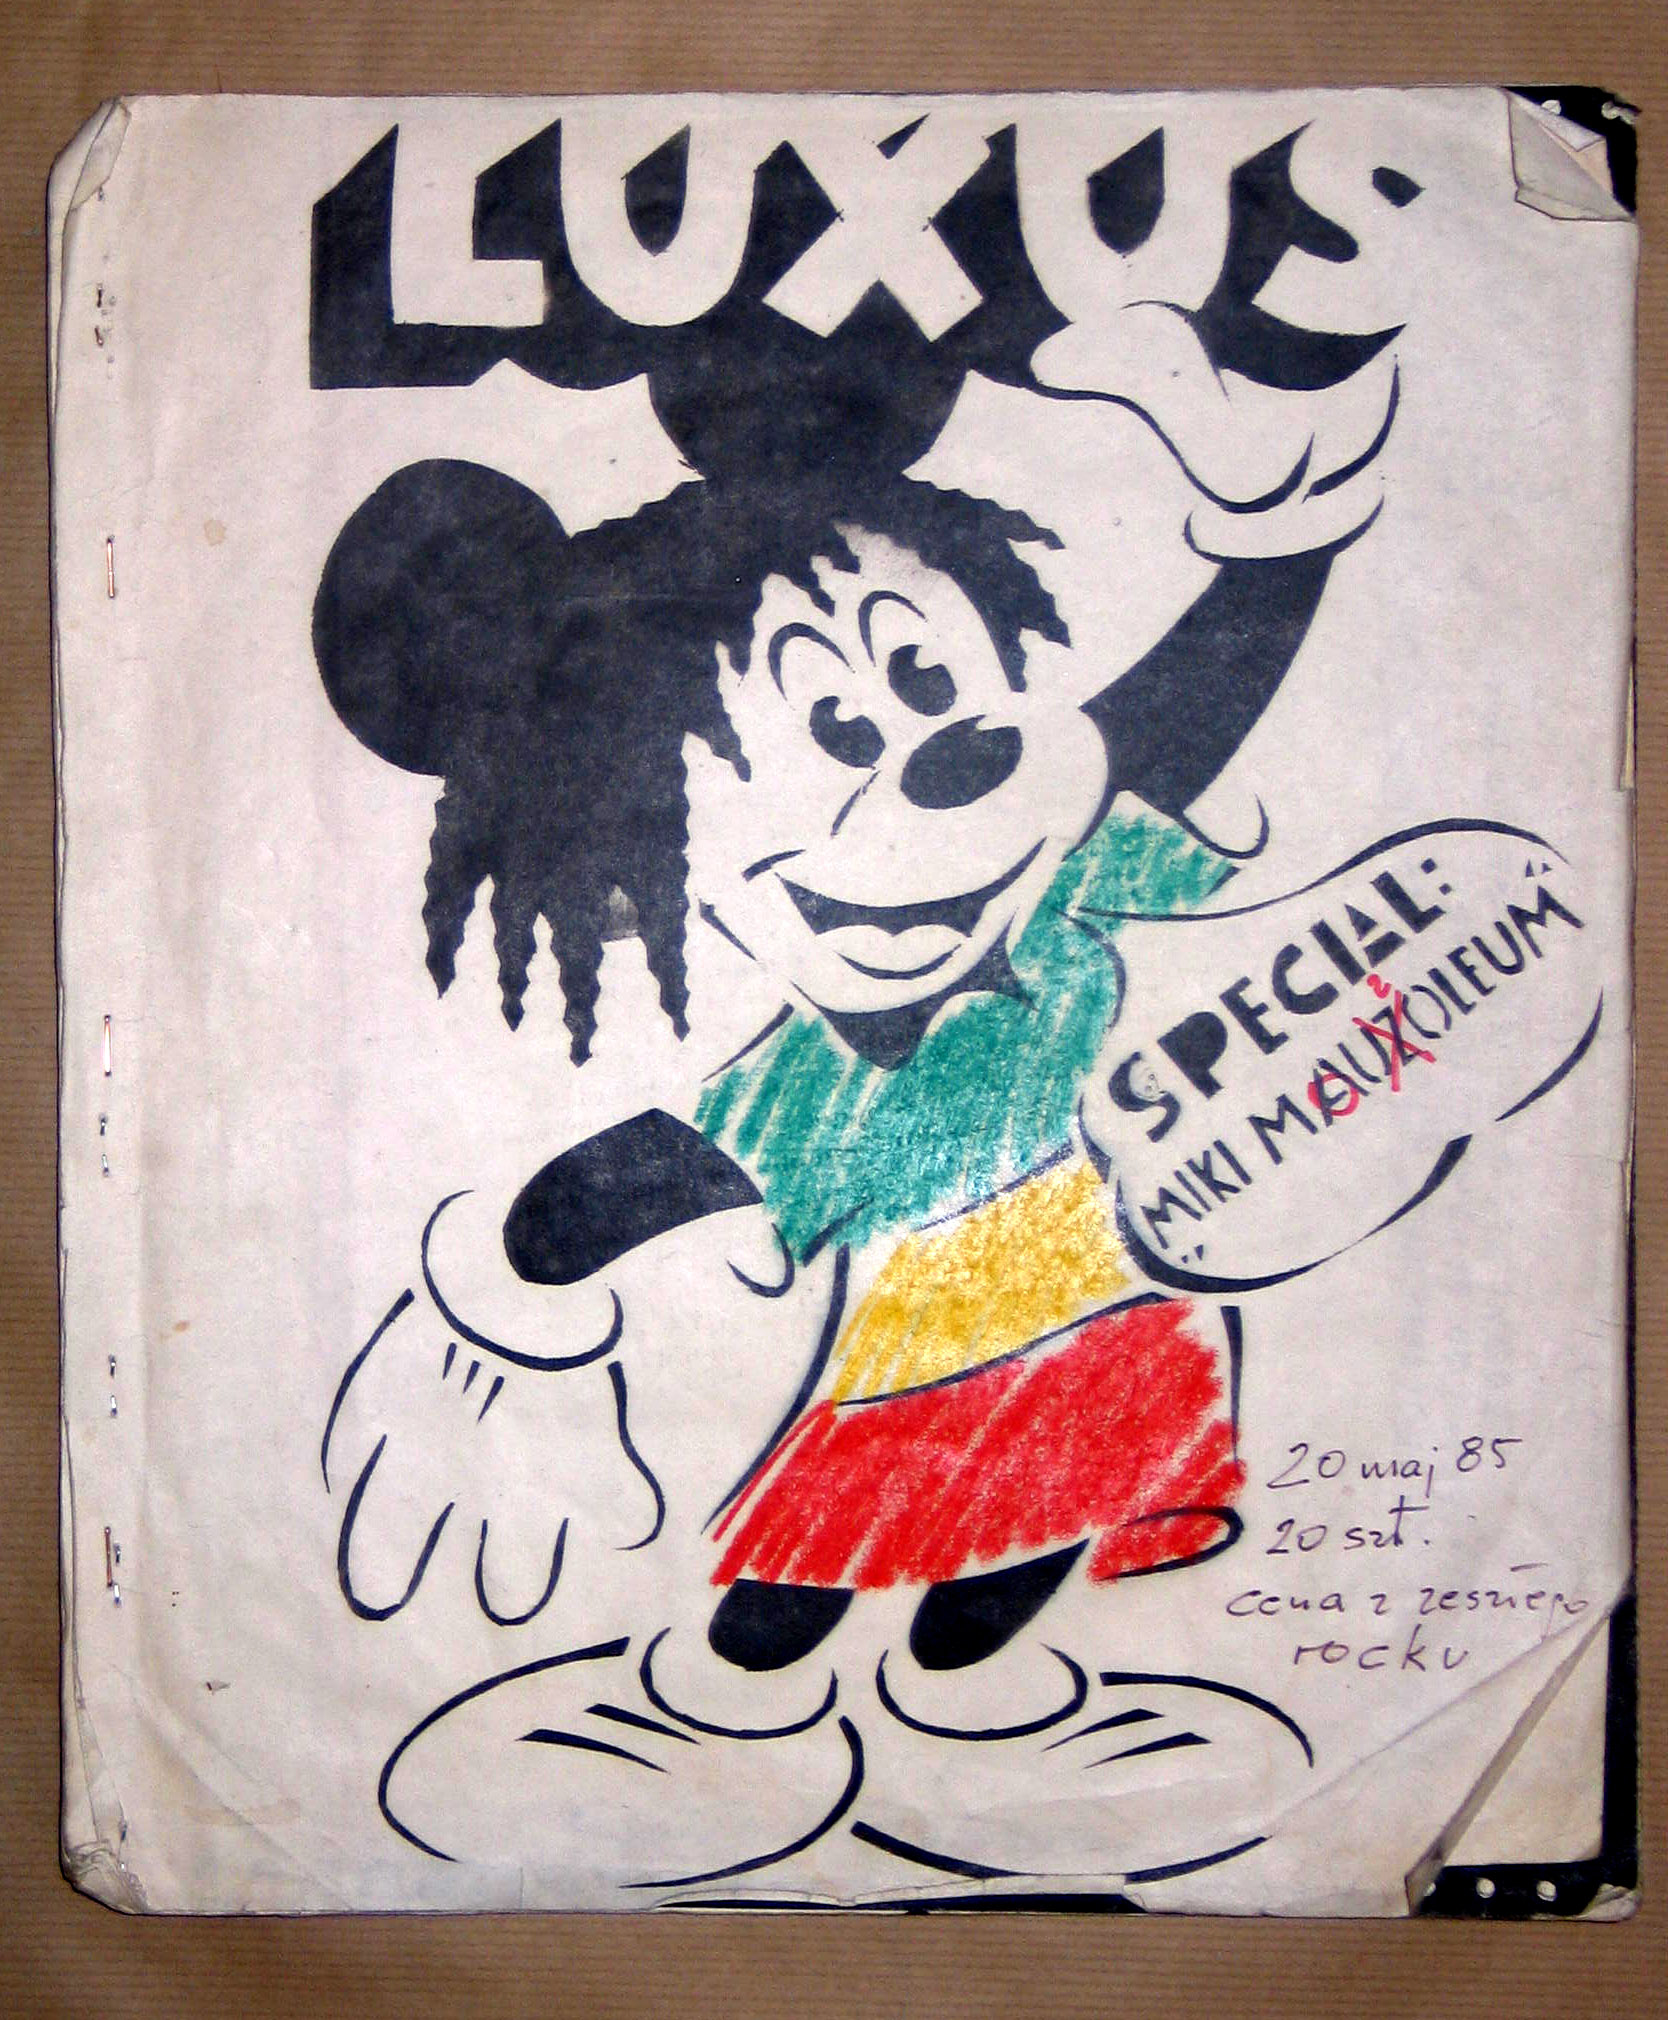 Grupa Luxus, okładka magazynu Luxus, wyd. bez numeru (w chronologii nr.5), data wydania 20 maj 1985